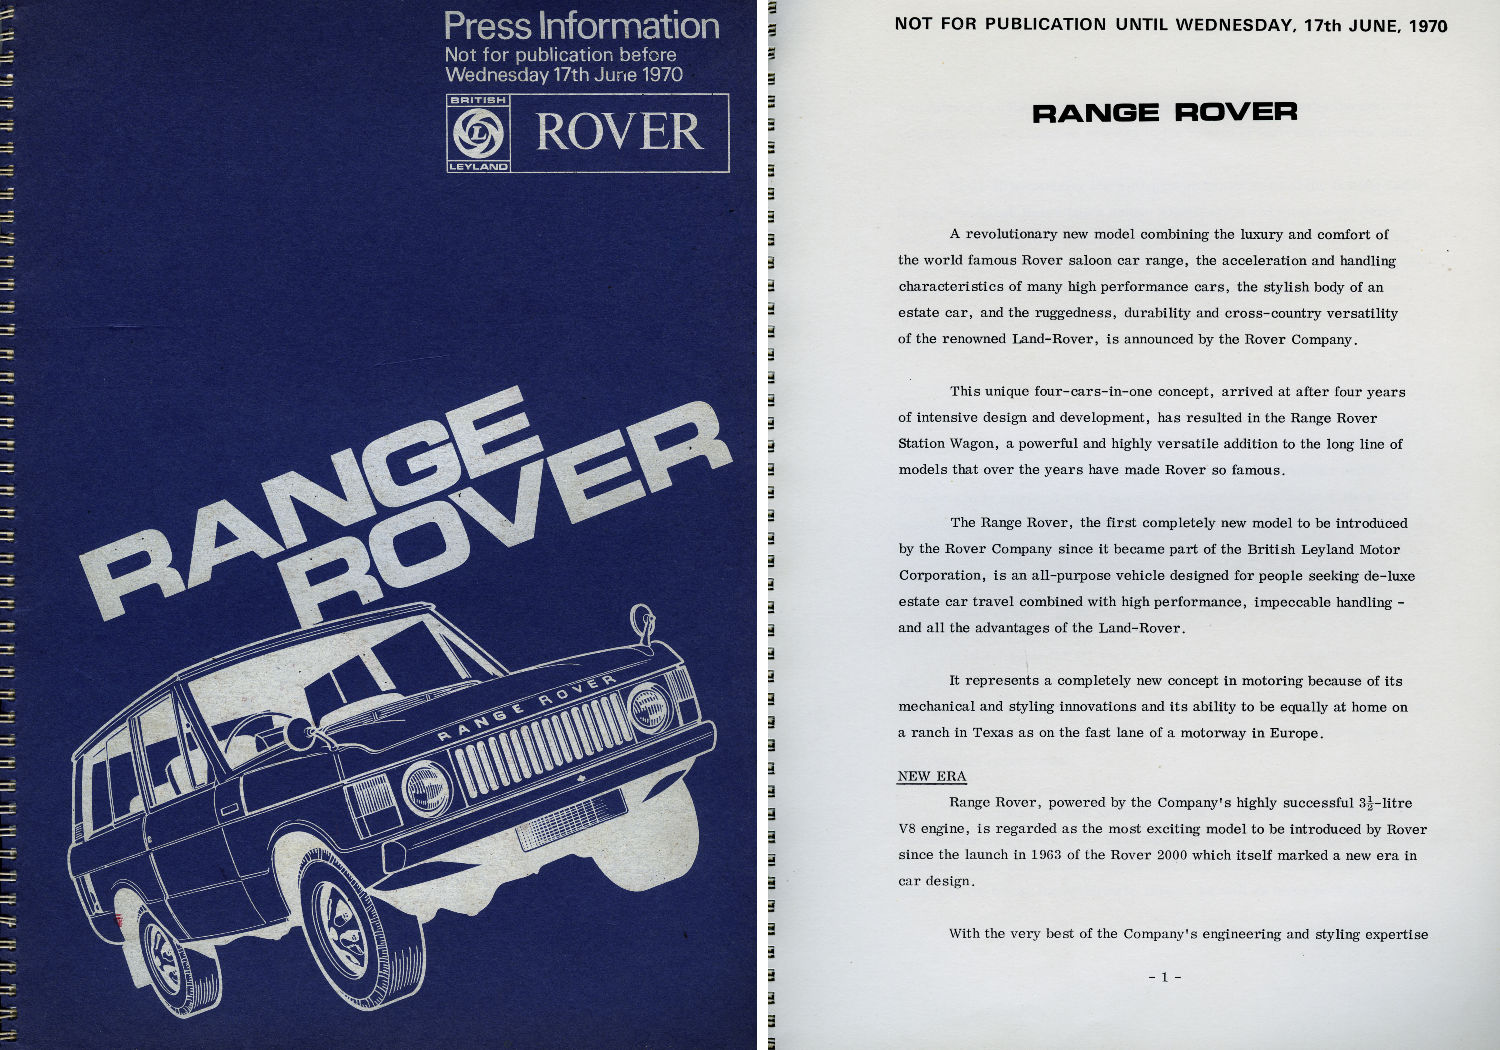 1970 Range Rover press kit